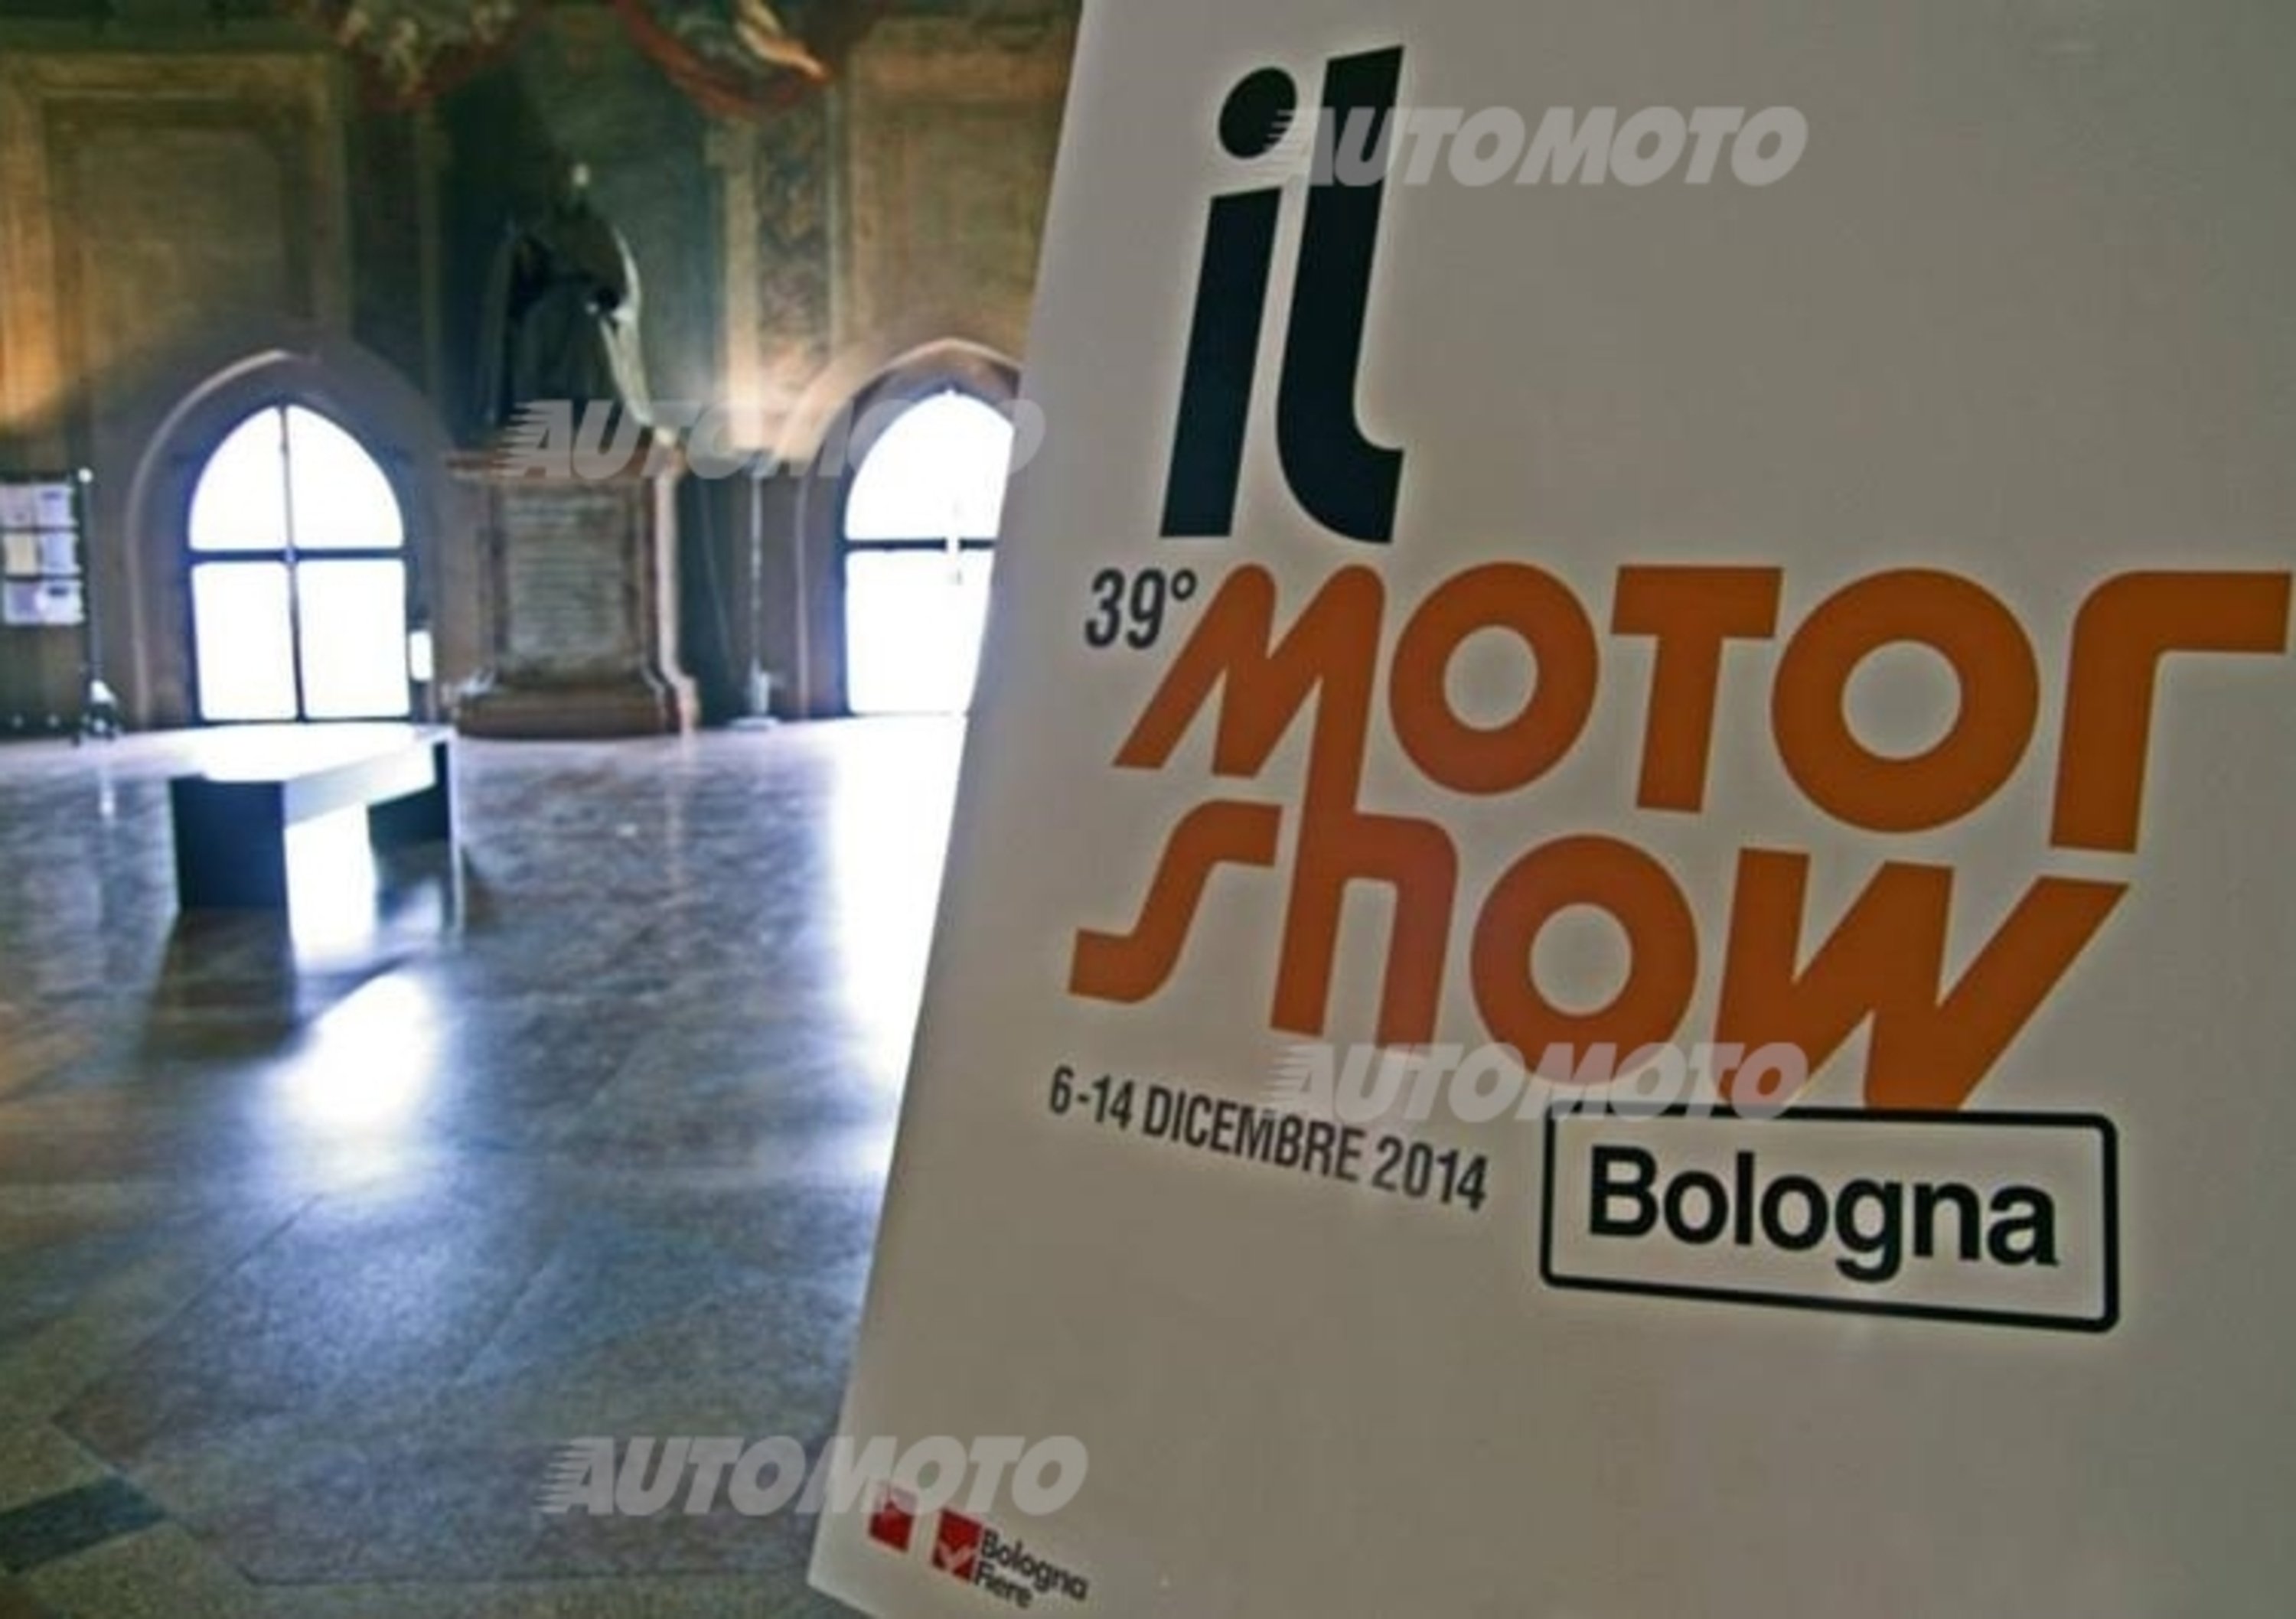 Motor Show di Bologna: torna nel 2014 con un format innovativo